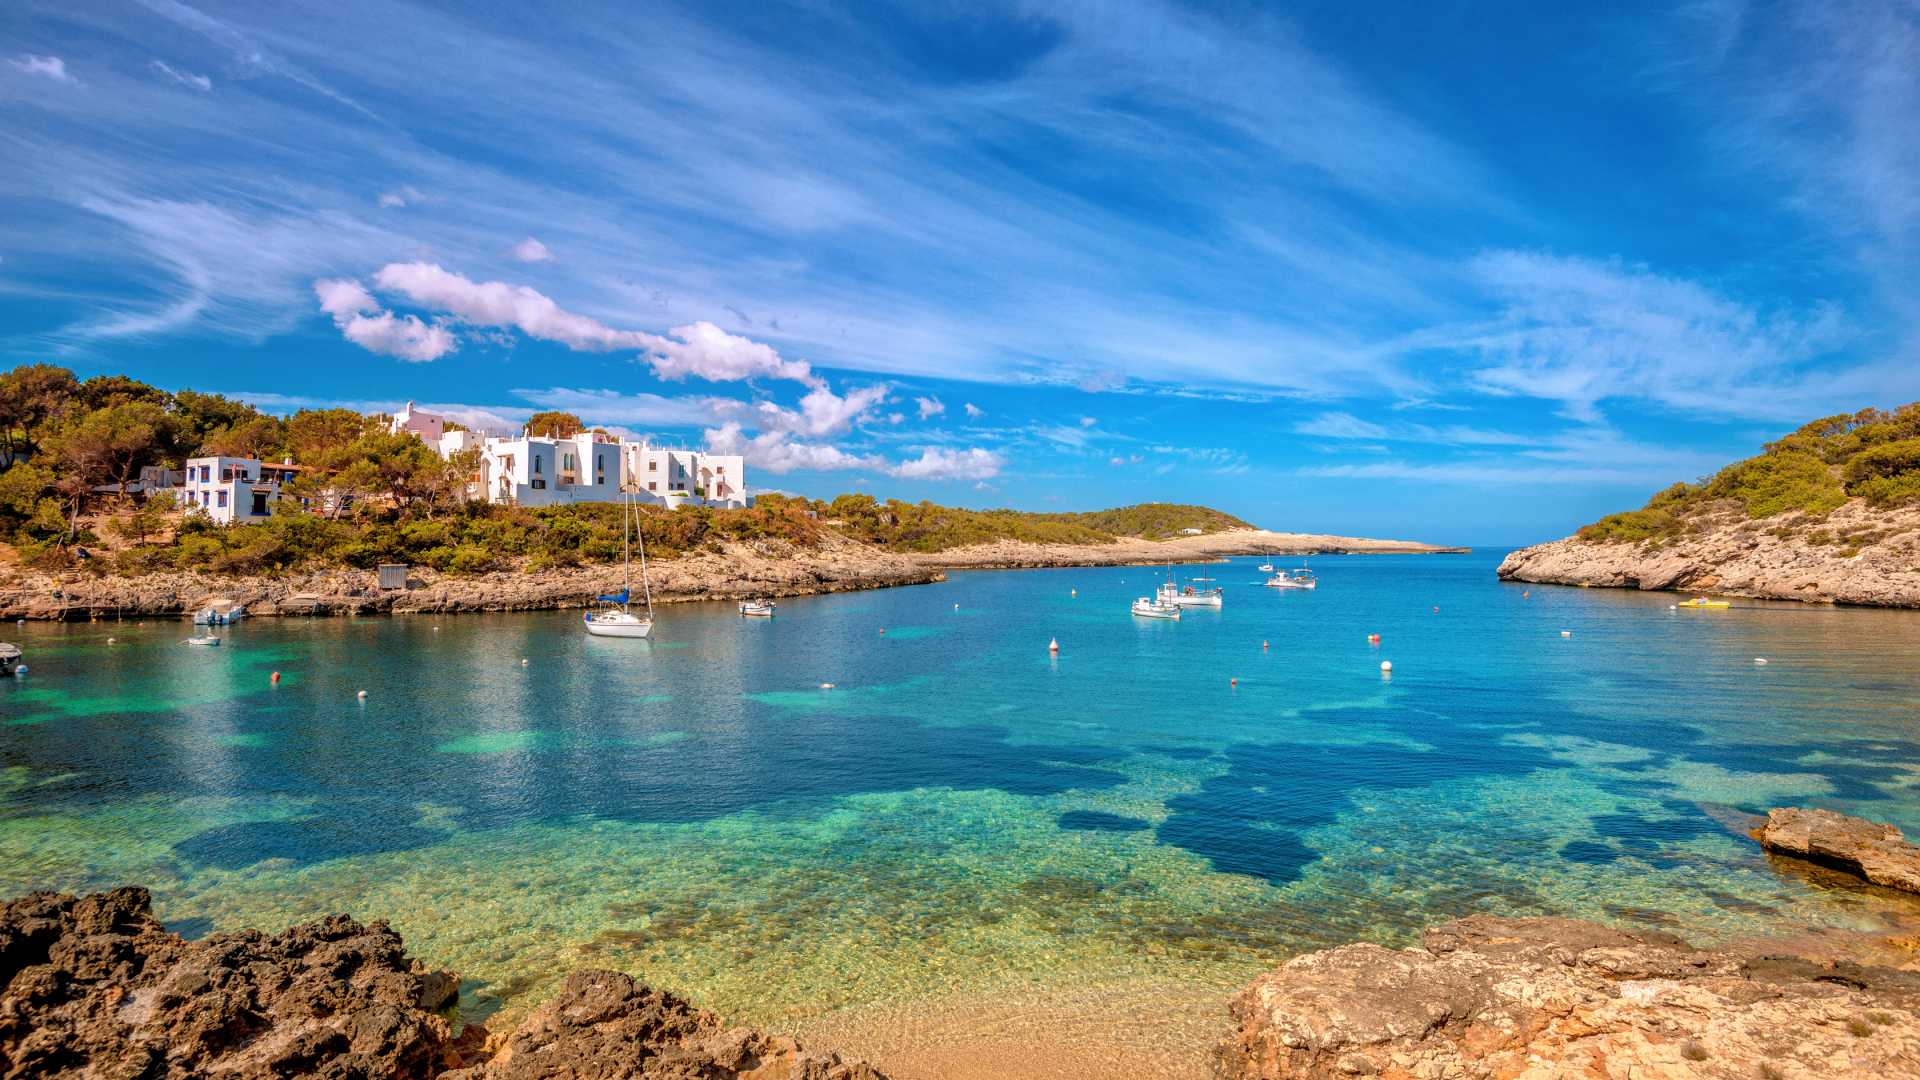 Vacaciones Baleares | Reserve para 2019/2020 con nuestro Balearic